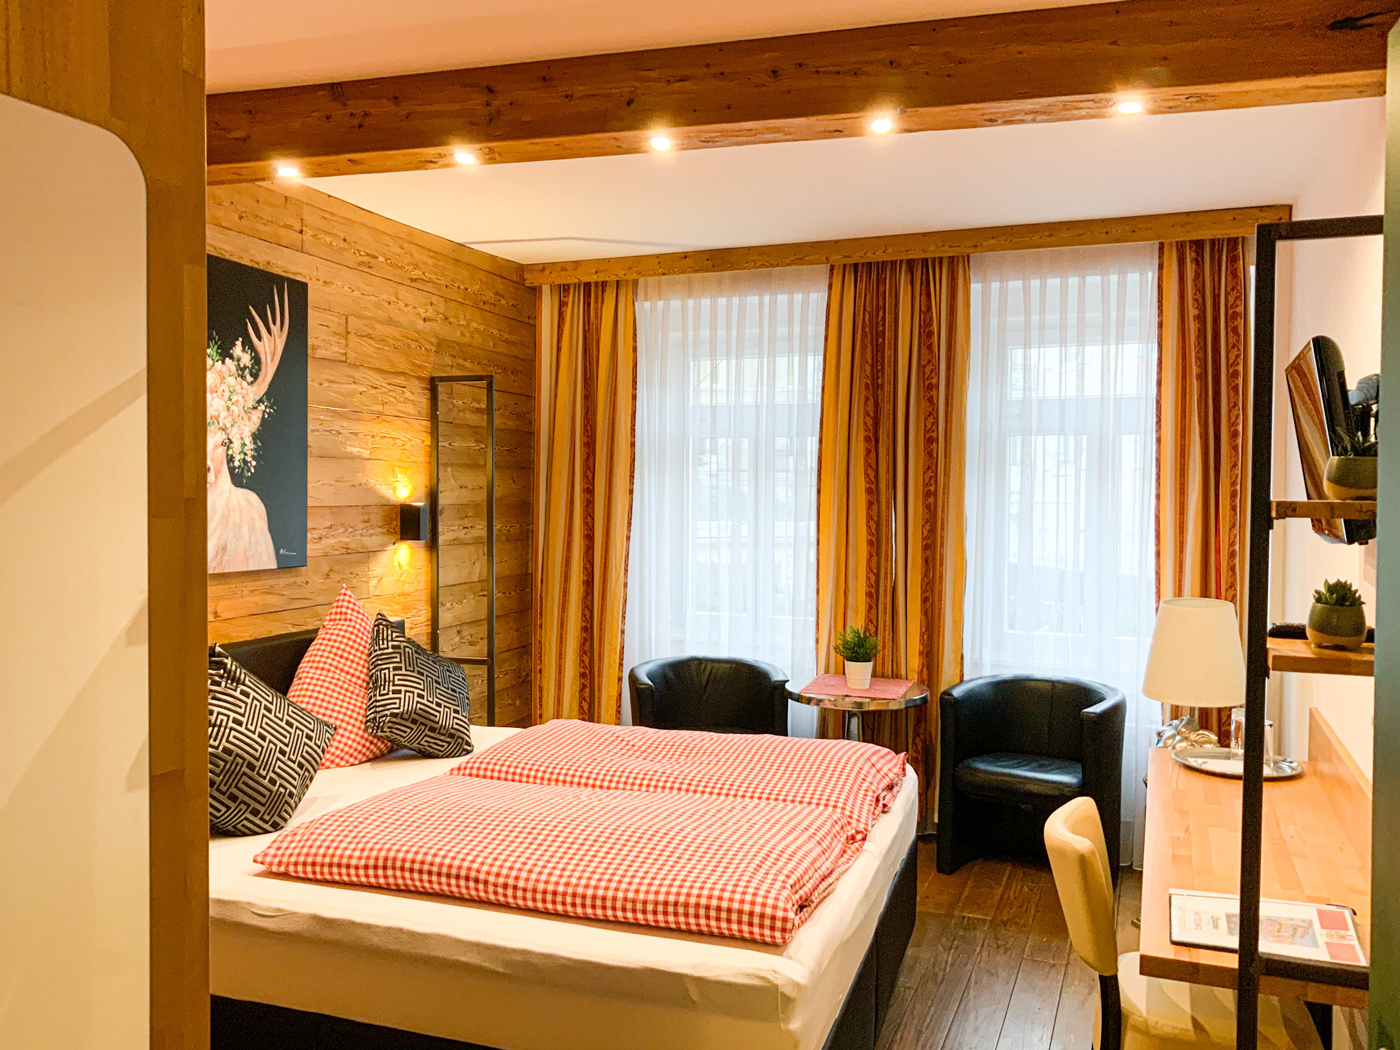 Doppelzimmer für Ihren Aufenthalt in Baden-Baden buchen.